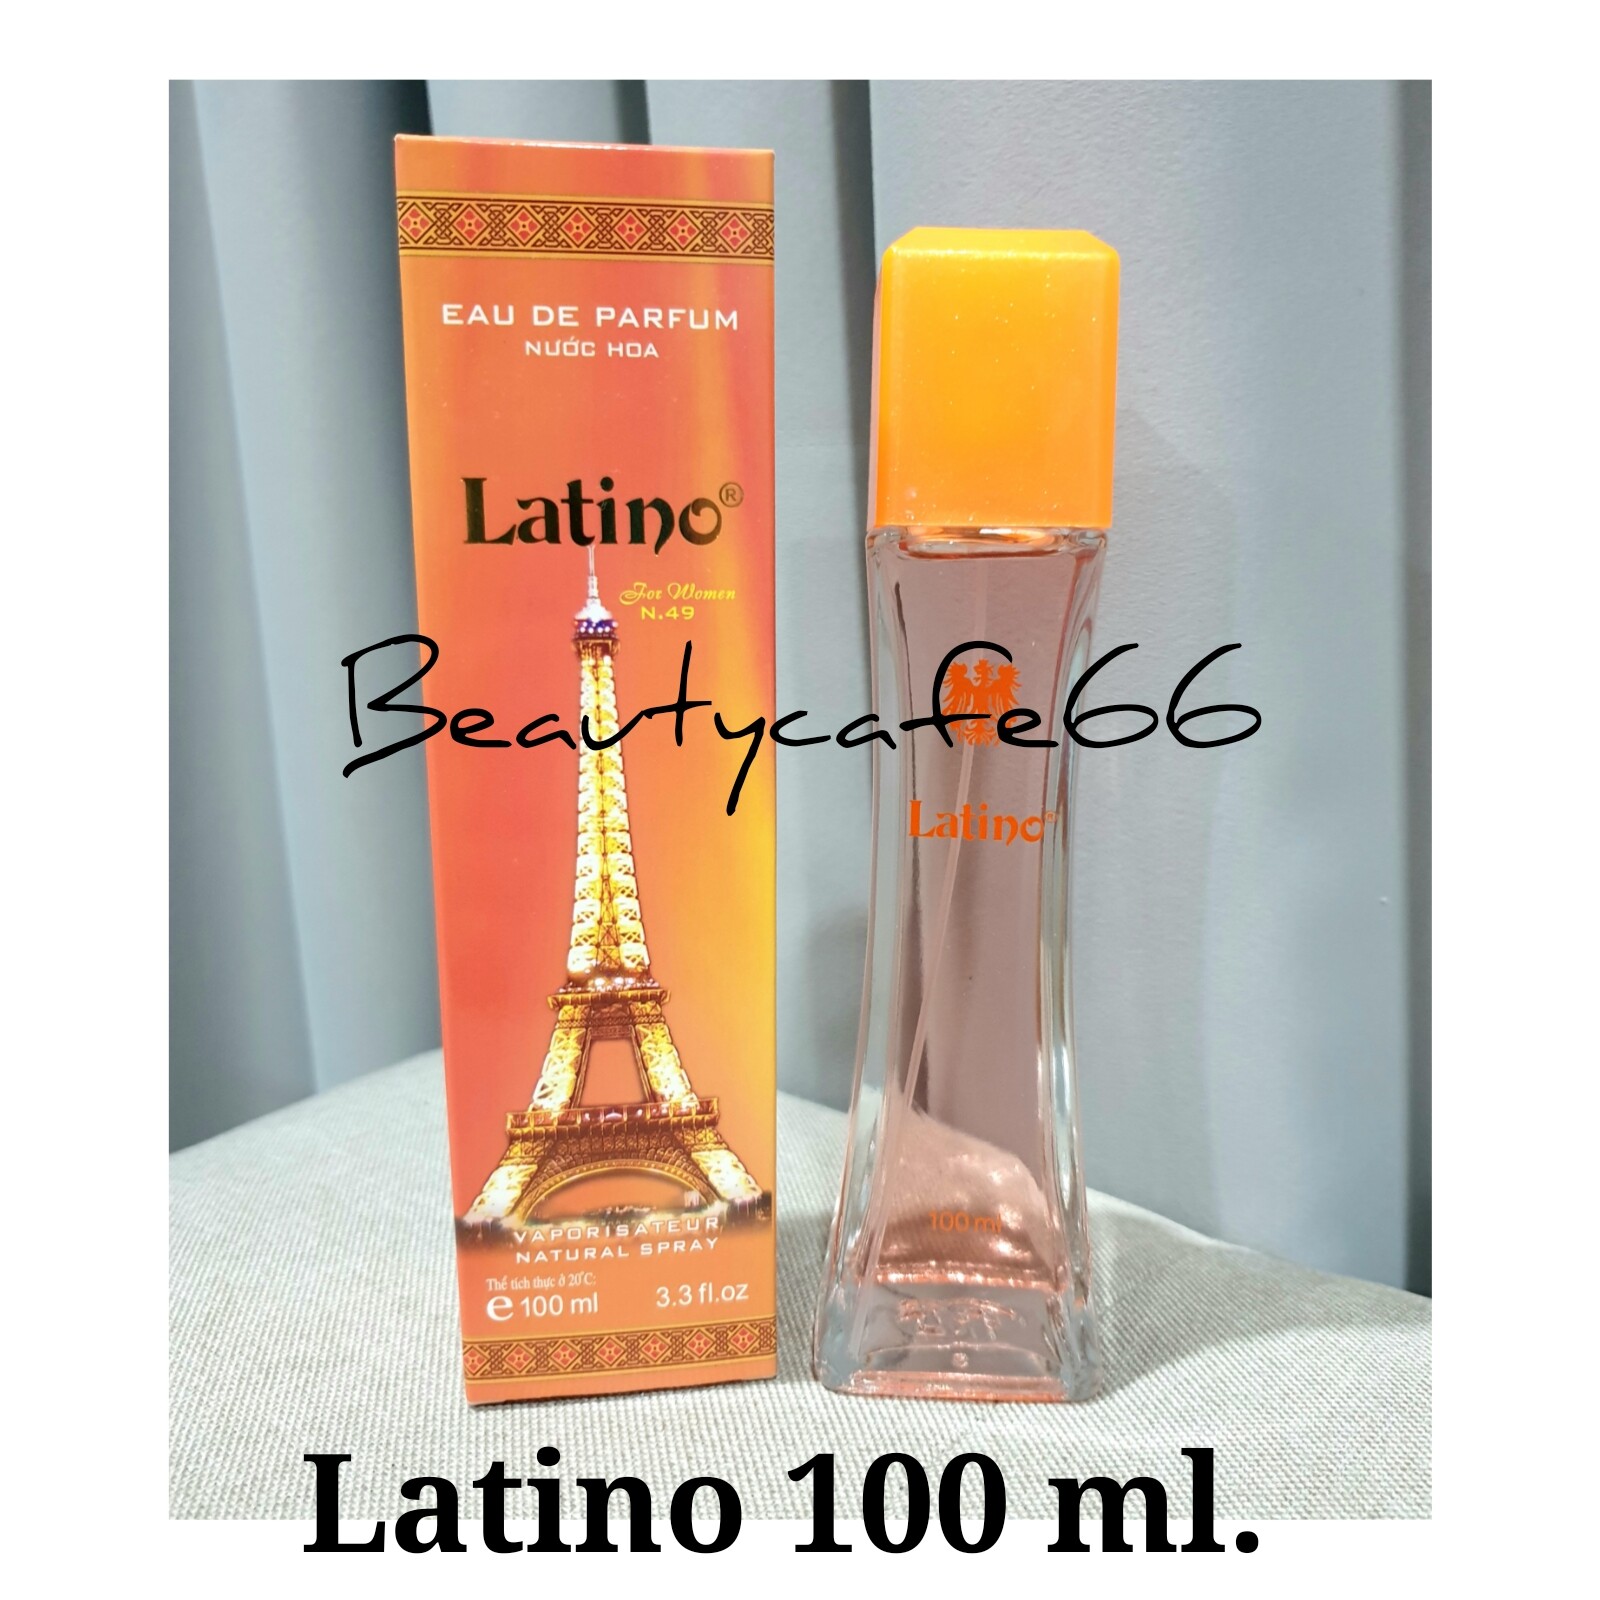 น้ำหอมสเปรย์ ลาติโน่ Latino EAU De Parfum 100 ml. สีส้ม น้ำหอมผู้หญิง กลิ่นหอมติดทนนาน